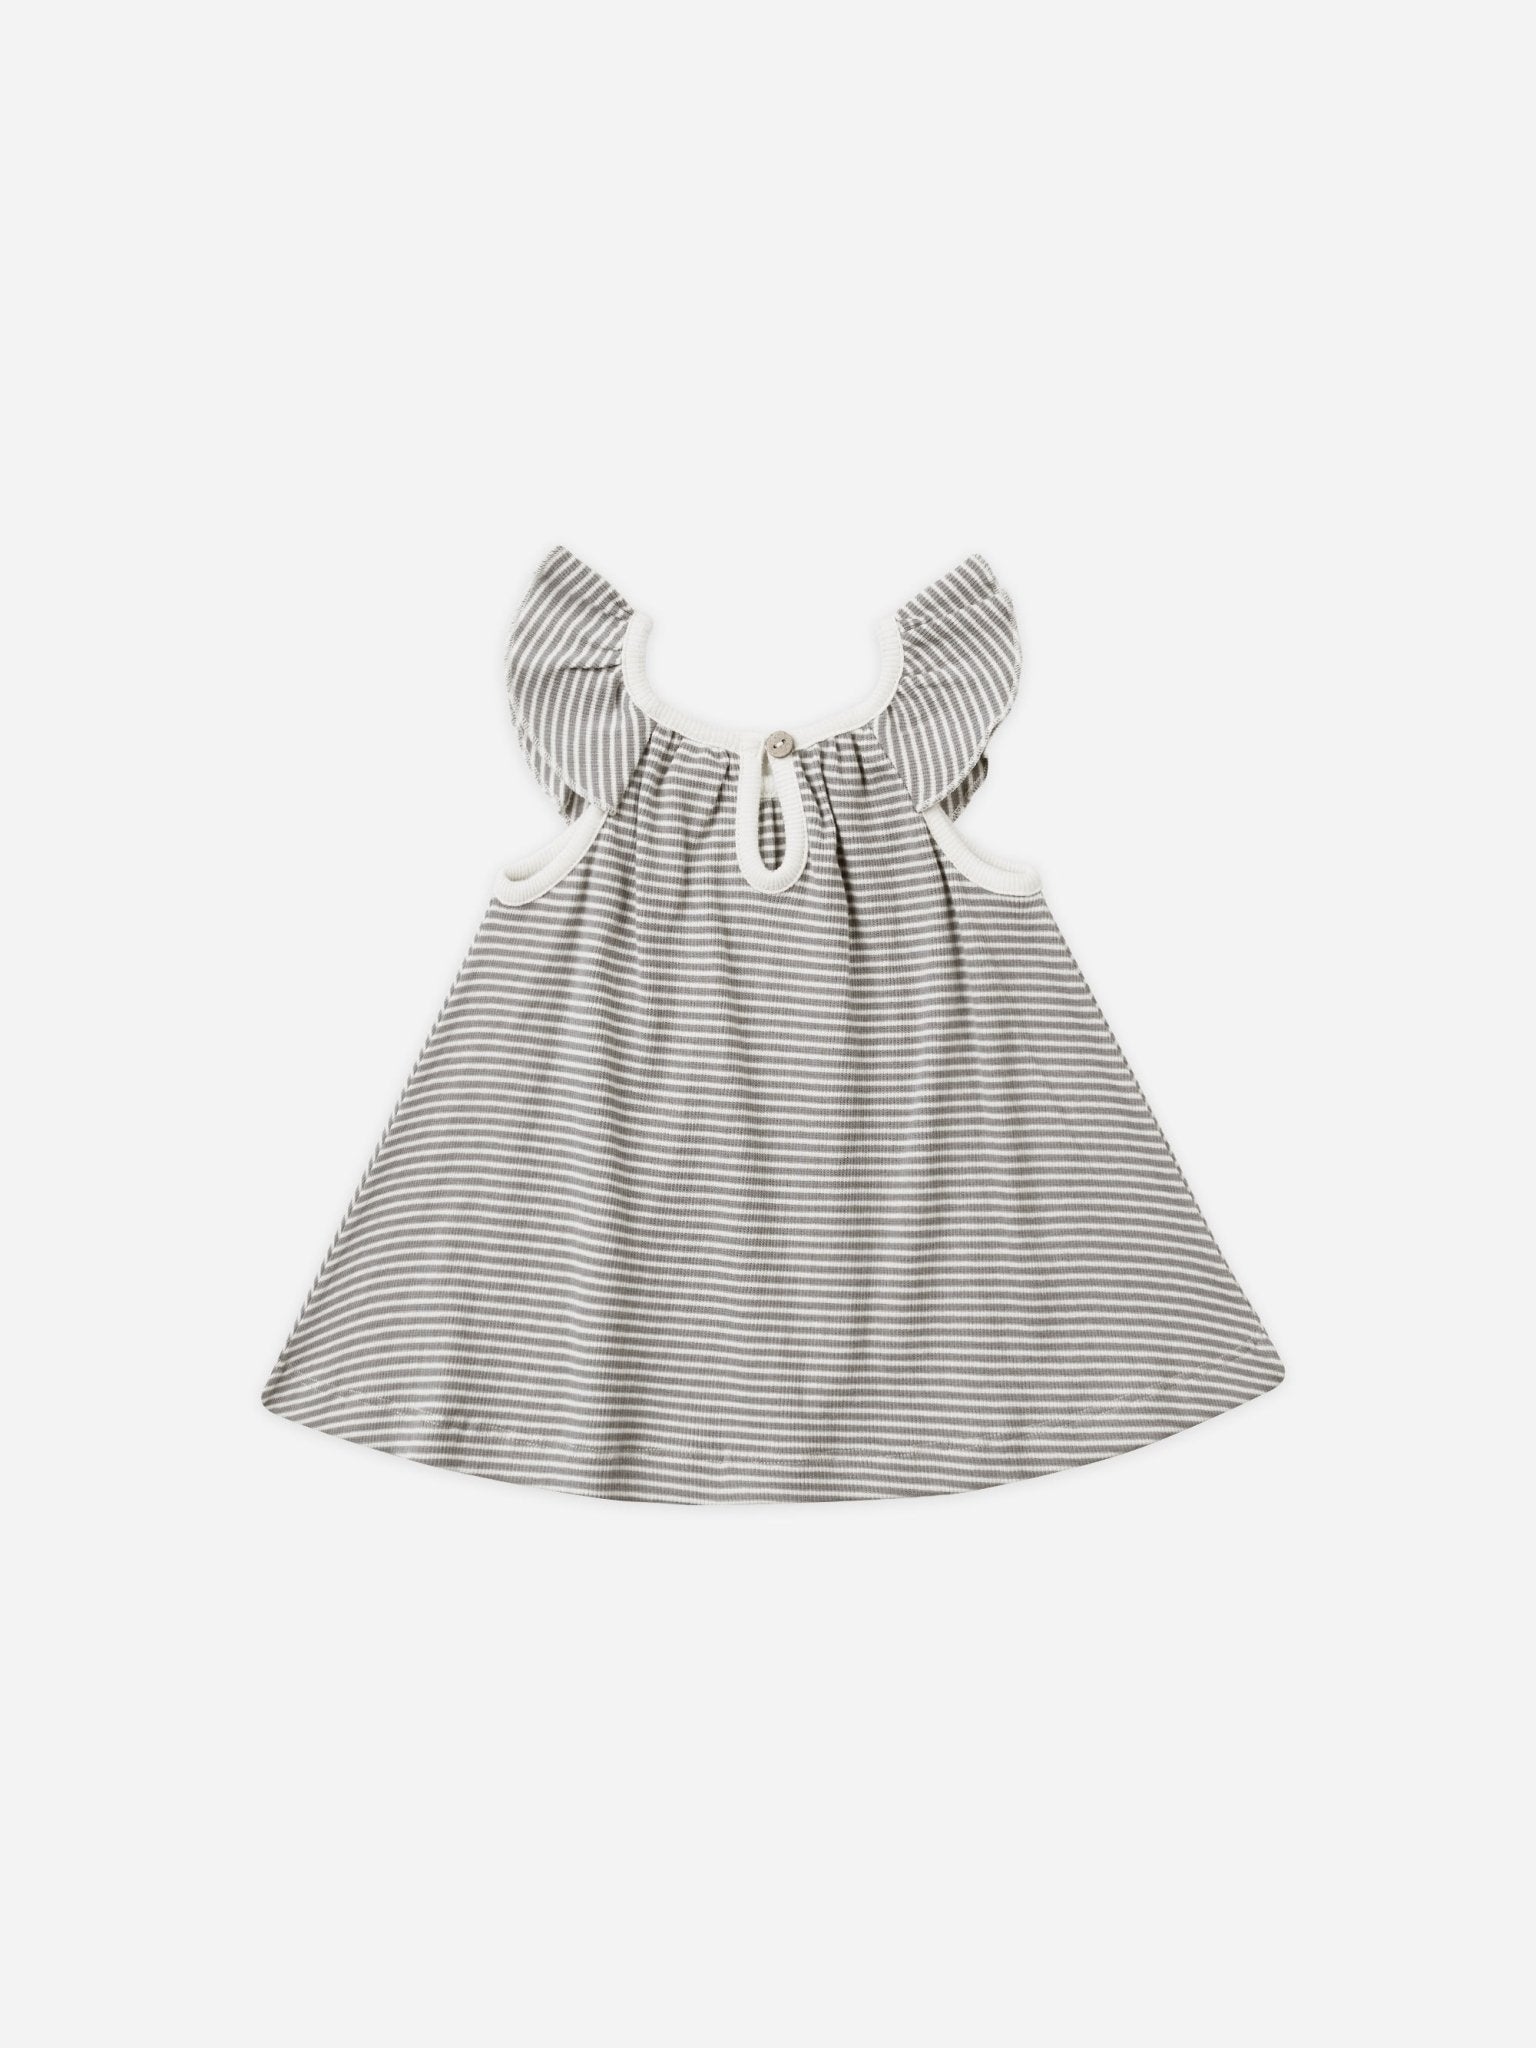 Ruffle Swing Dress || Lagoon Micro Stripe - Rylee + Cru Canada